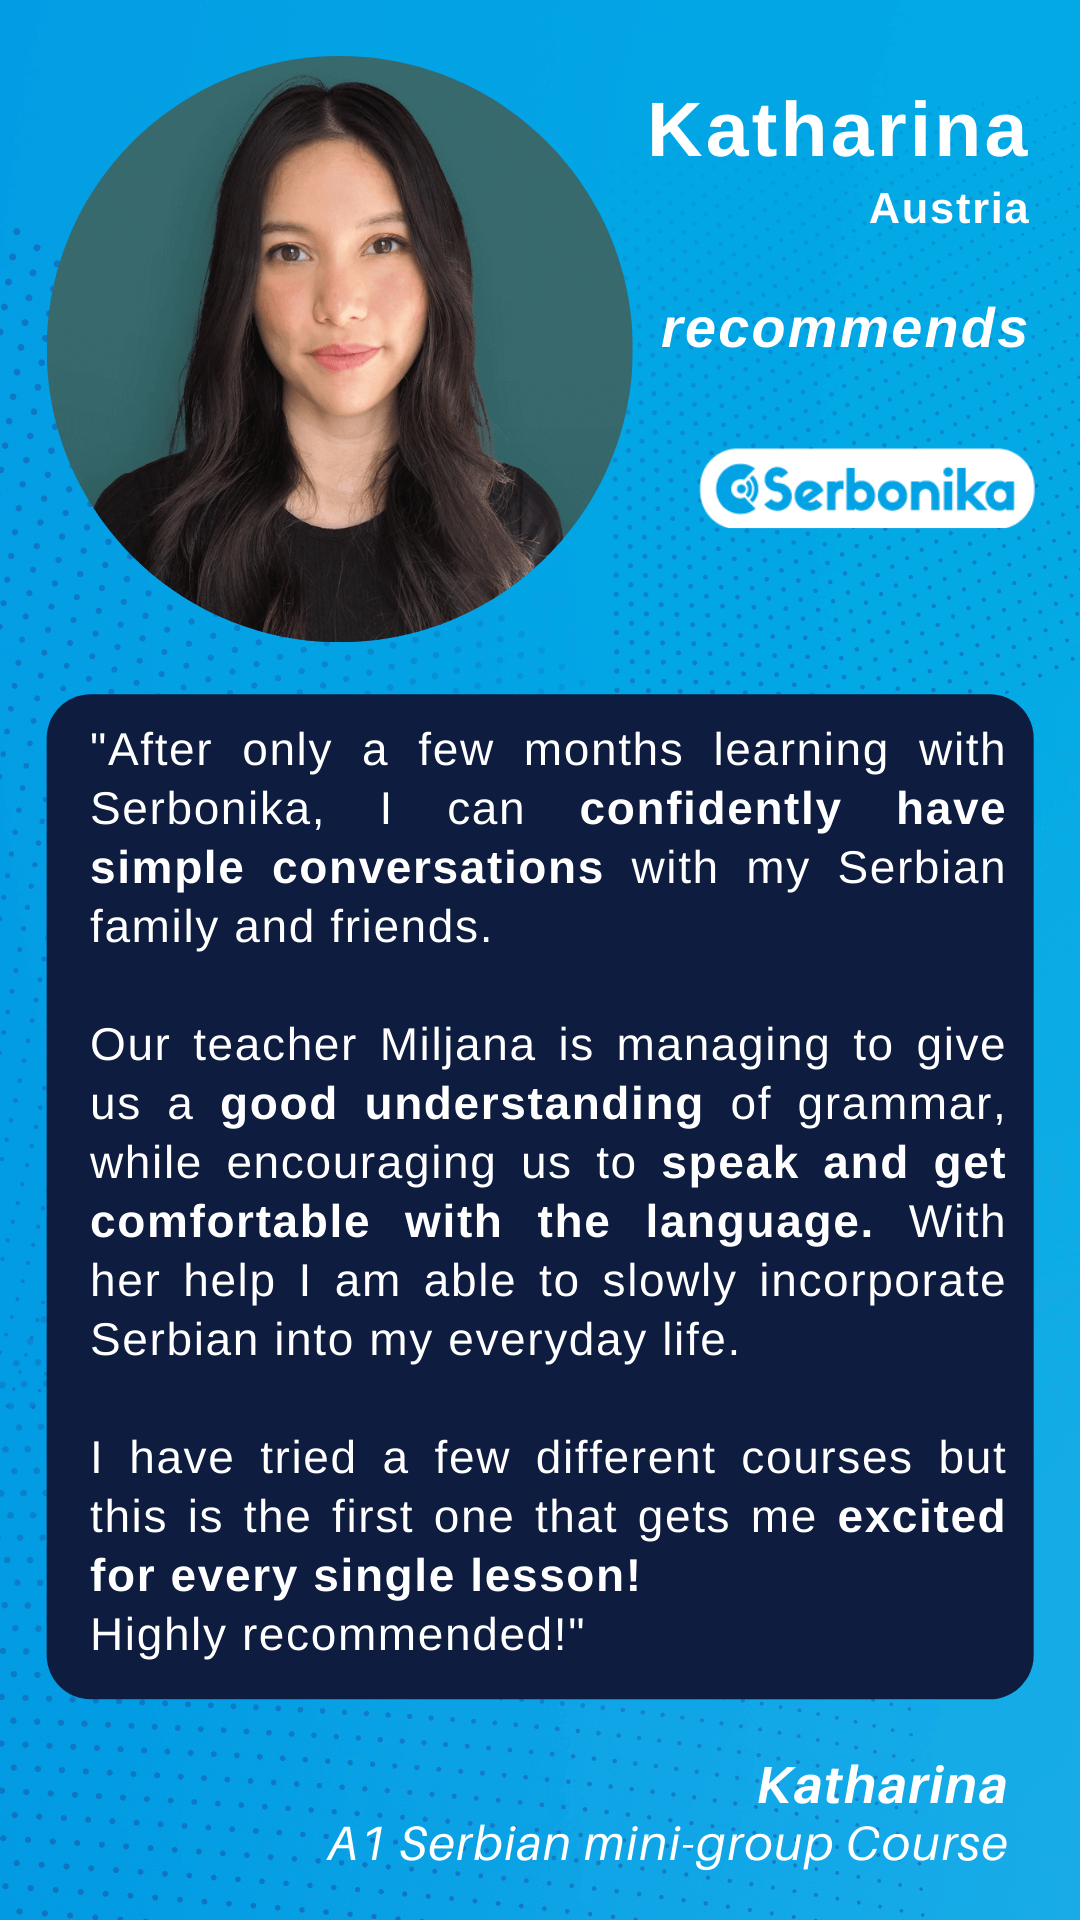 Katharina recommends group Serbian lessons at Serbonika